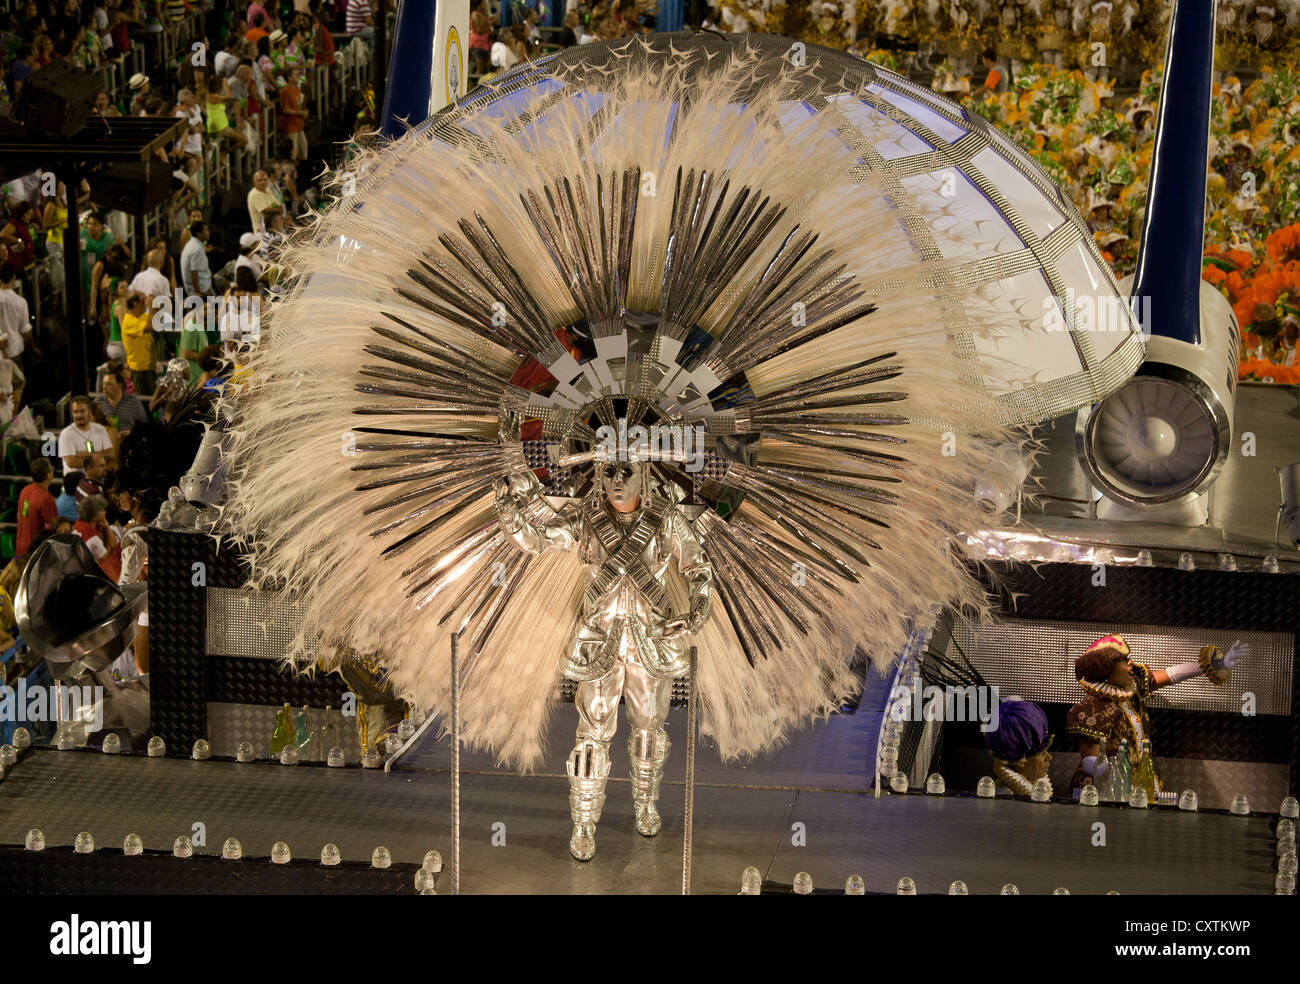 1,336 Disfraz Carnaval Brasil Mujer Plumas Fotos de stock - Fotos libres de  regalías de Dreamstime